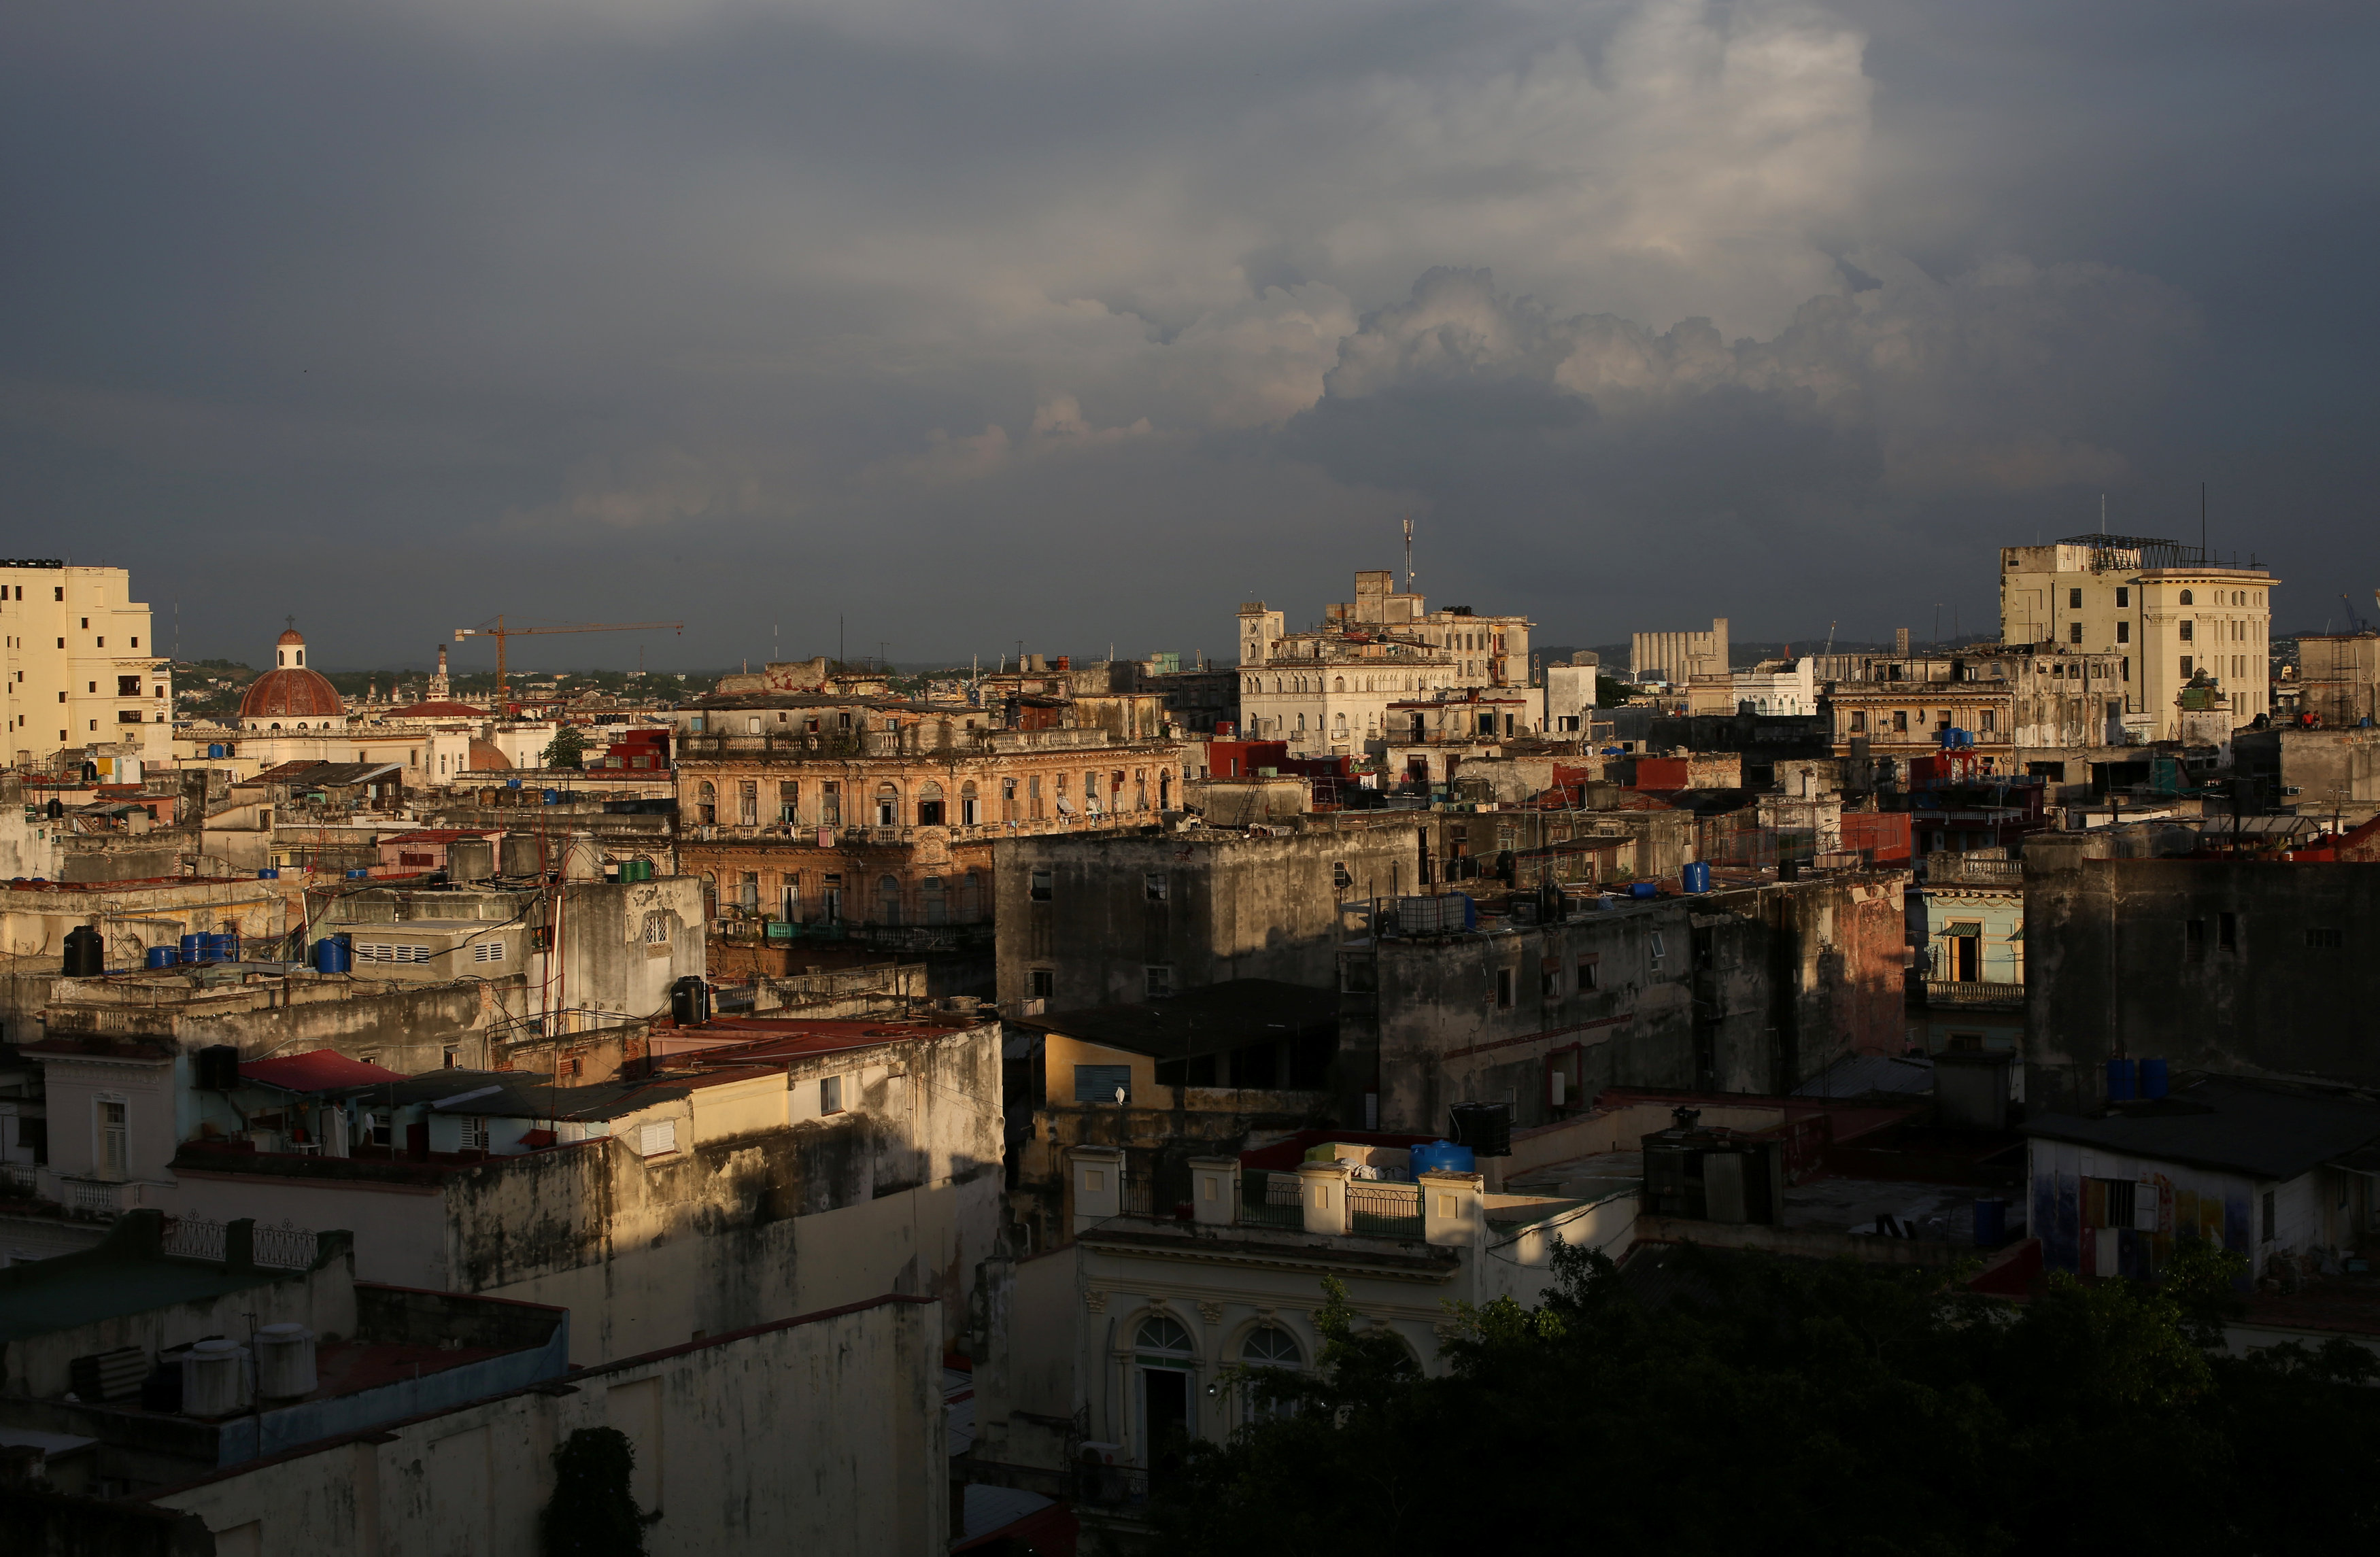 Cuba kicks off electoral process leading to Castro handover